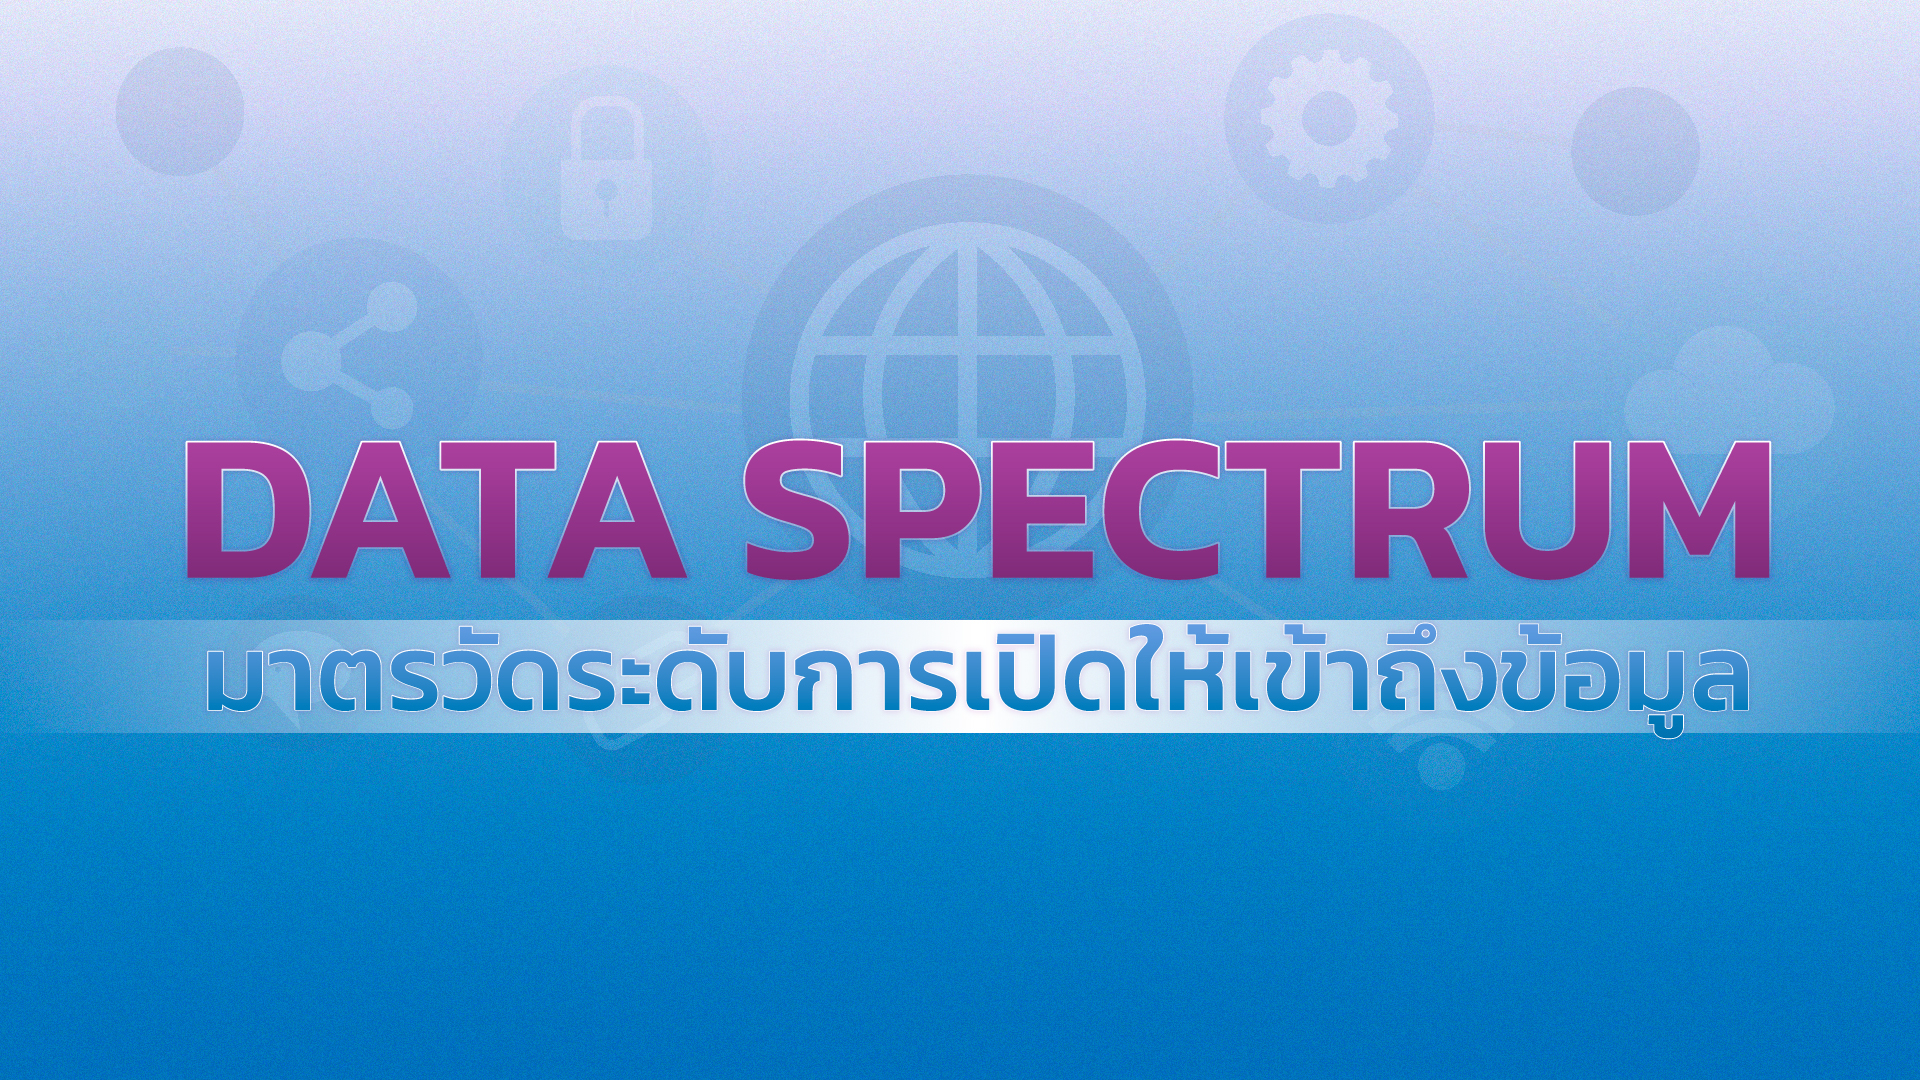 Data Spectrum - มาตรวัดระดับการเปิดให้เข้าถึงข้อมูล